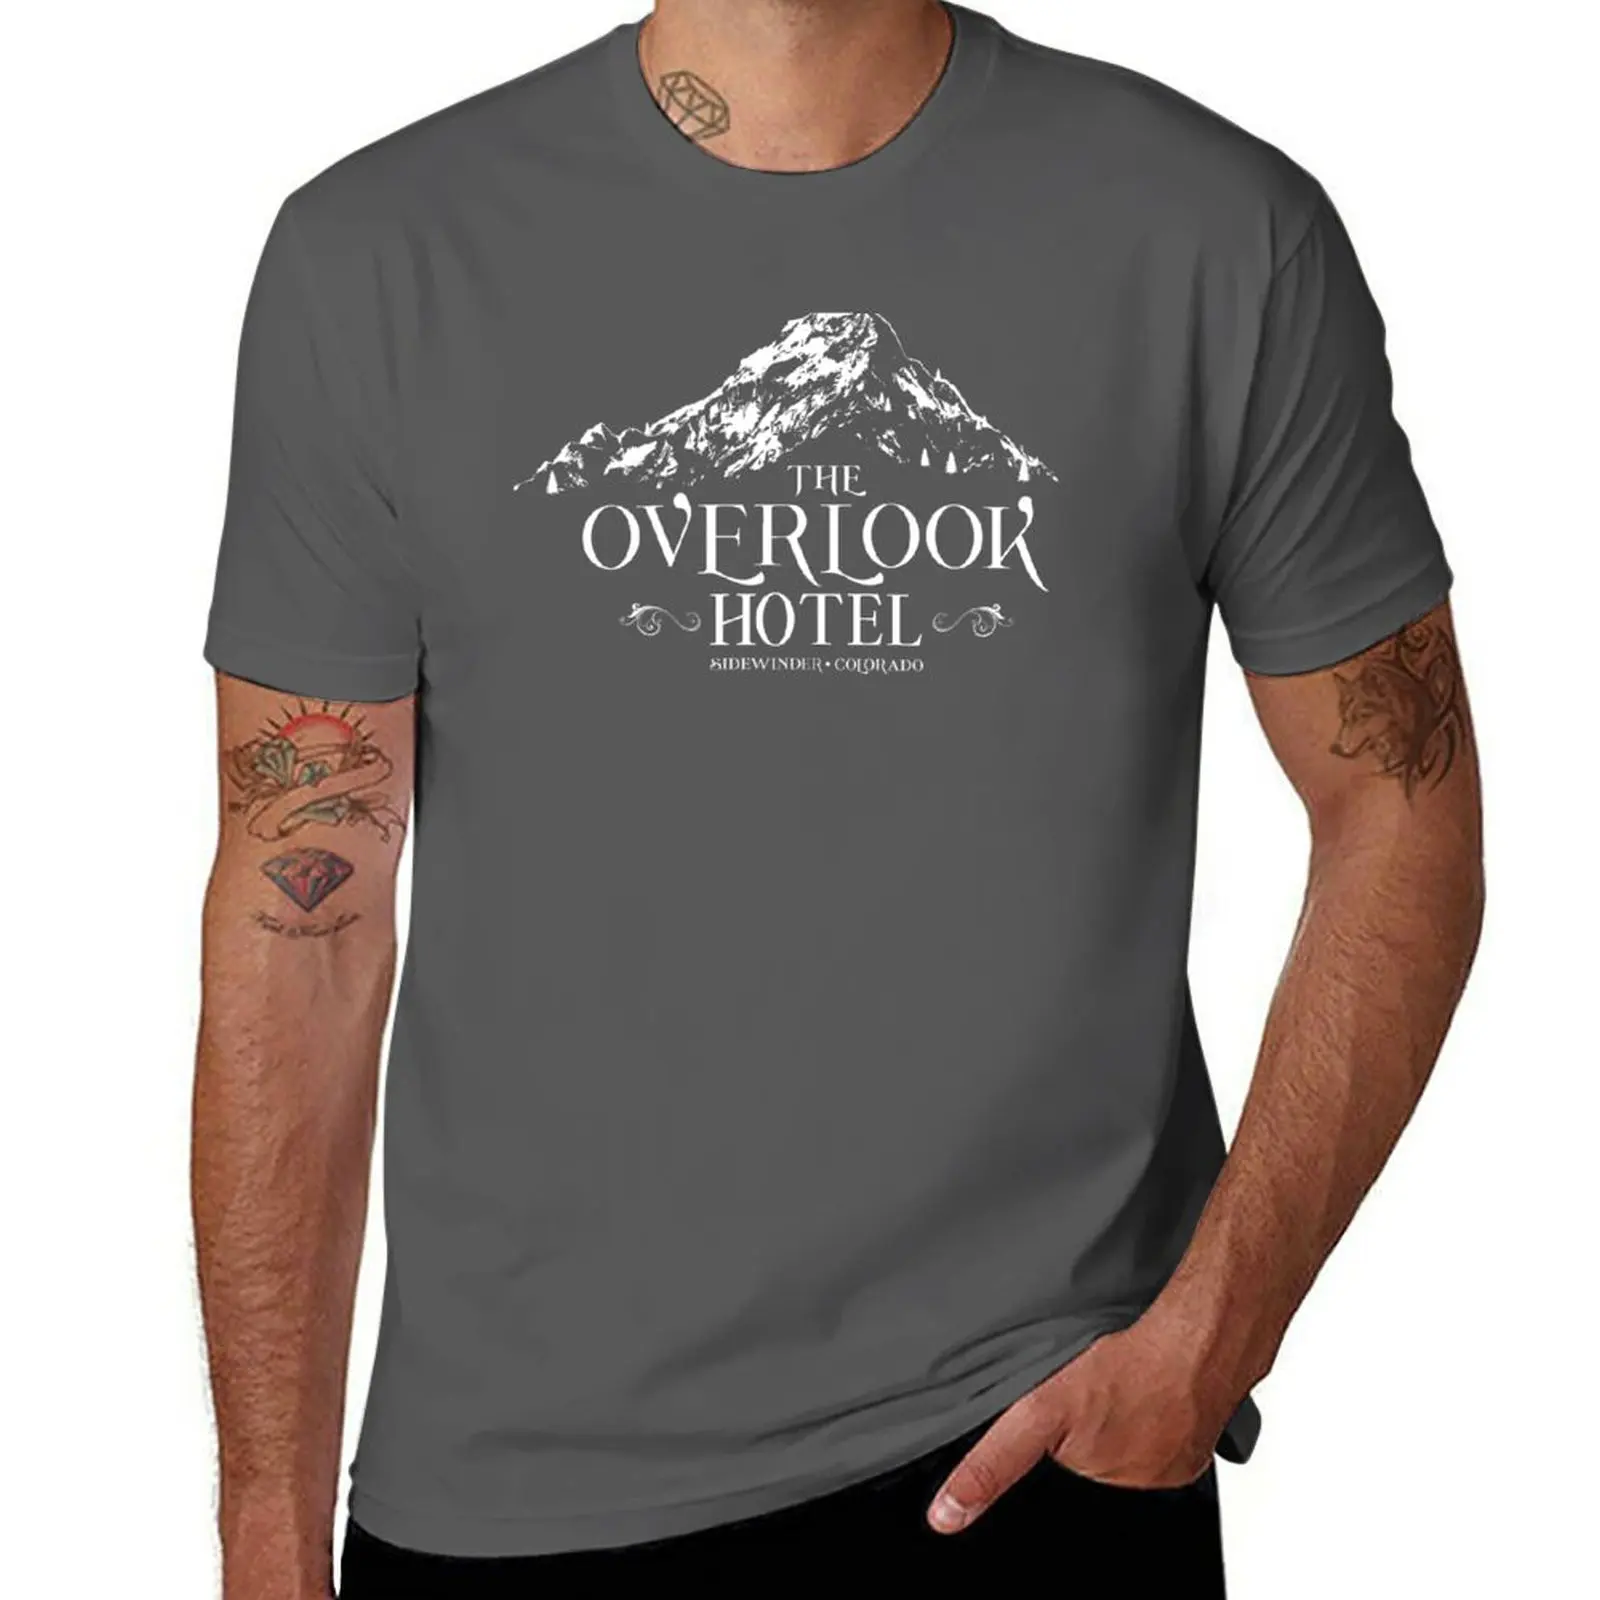 New Overlook Hotel - футболка чистого кроя, милая одежда, мужские футболки с коротким рукавом, забавные рисунки